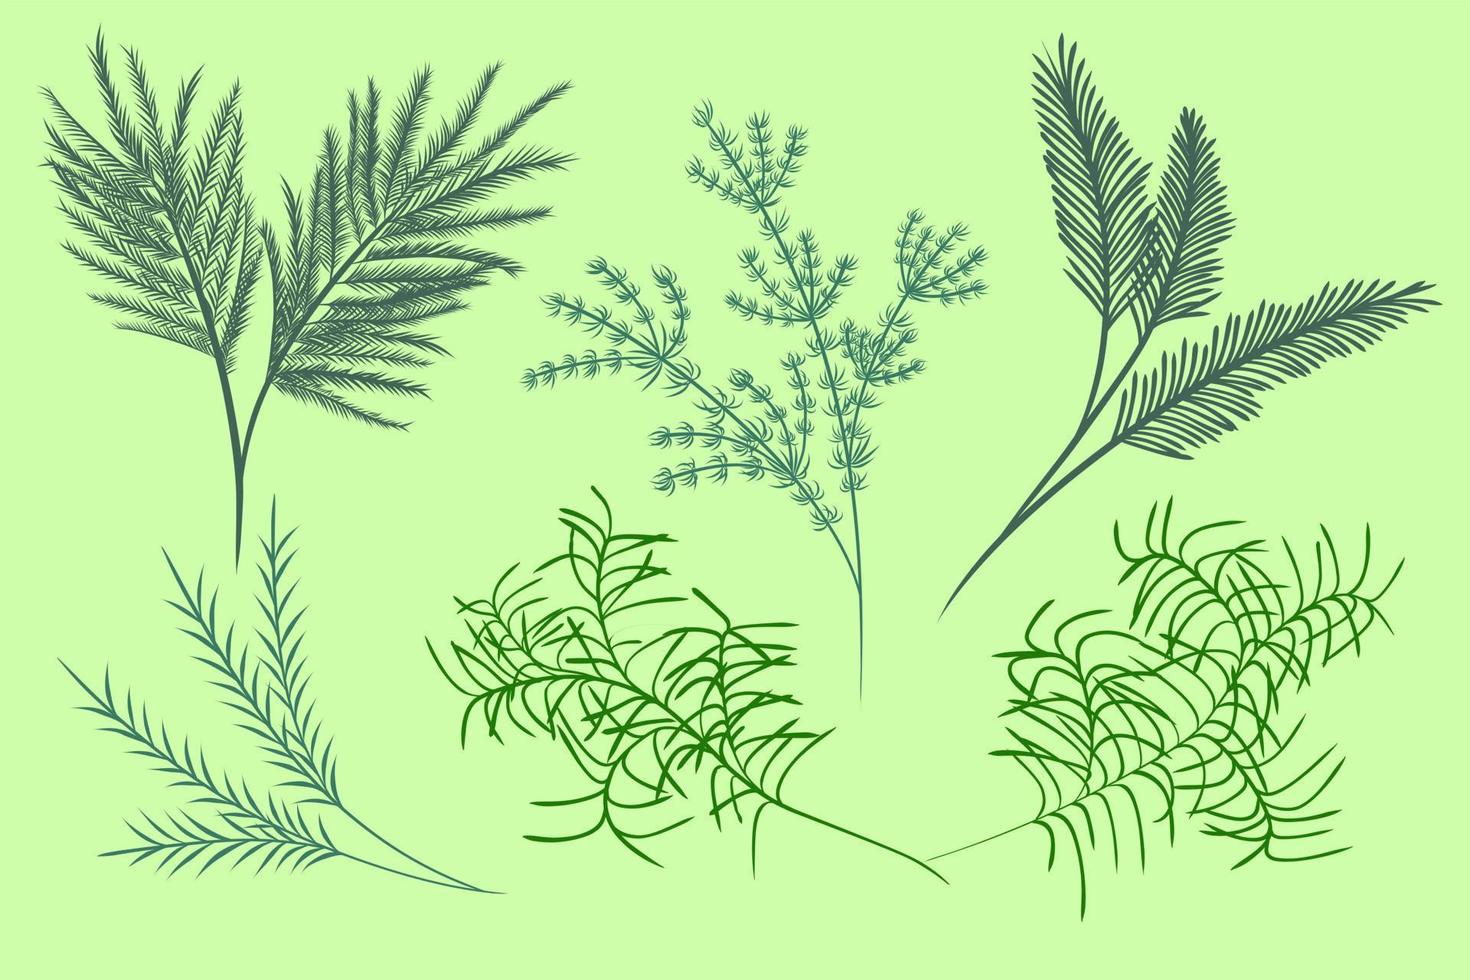 aquarellelemente grüne blätter zweige gesetzt. botanische Komposition Aquarell handgemalt isoliert auf weißem Hintergrund, geeignet für natürliches botanisches Dekorationsdesign, Hintergrund, Hochzeit, Karten. vektor